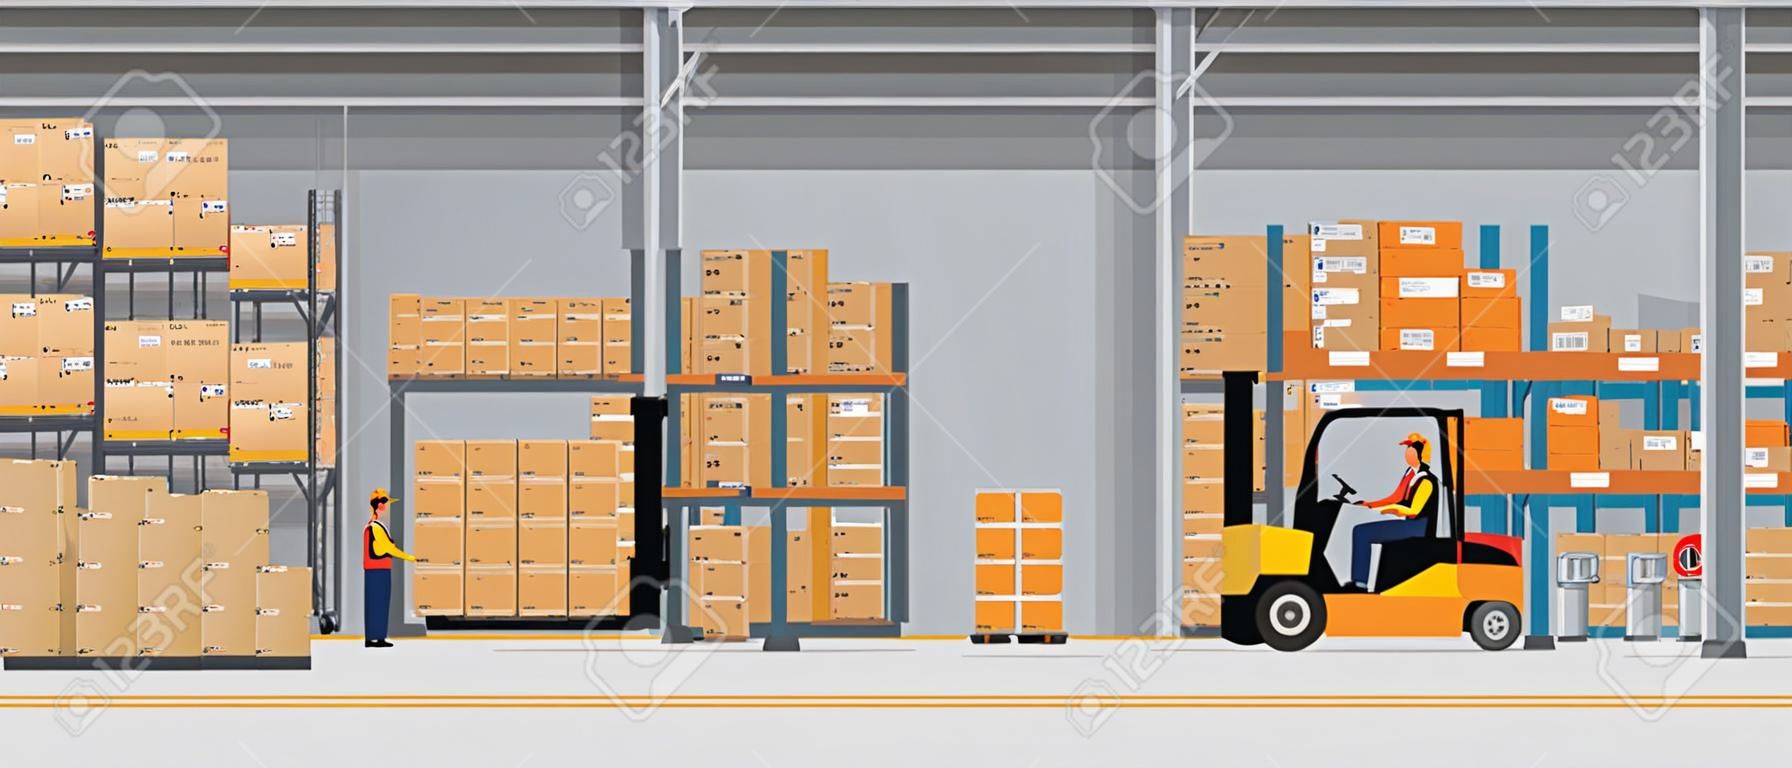 Magazijn Interieur met Dozen Op Rack En Mensen Werken. Platte en solide kleur stijl Logistic Delivery Service Concept. Vector Illustratie.